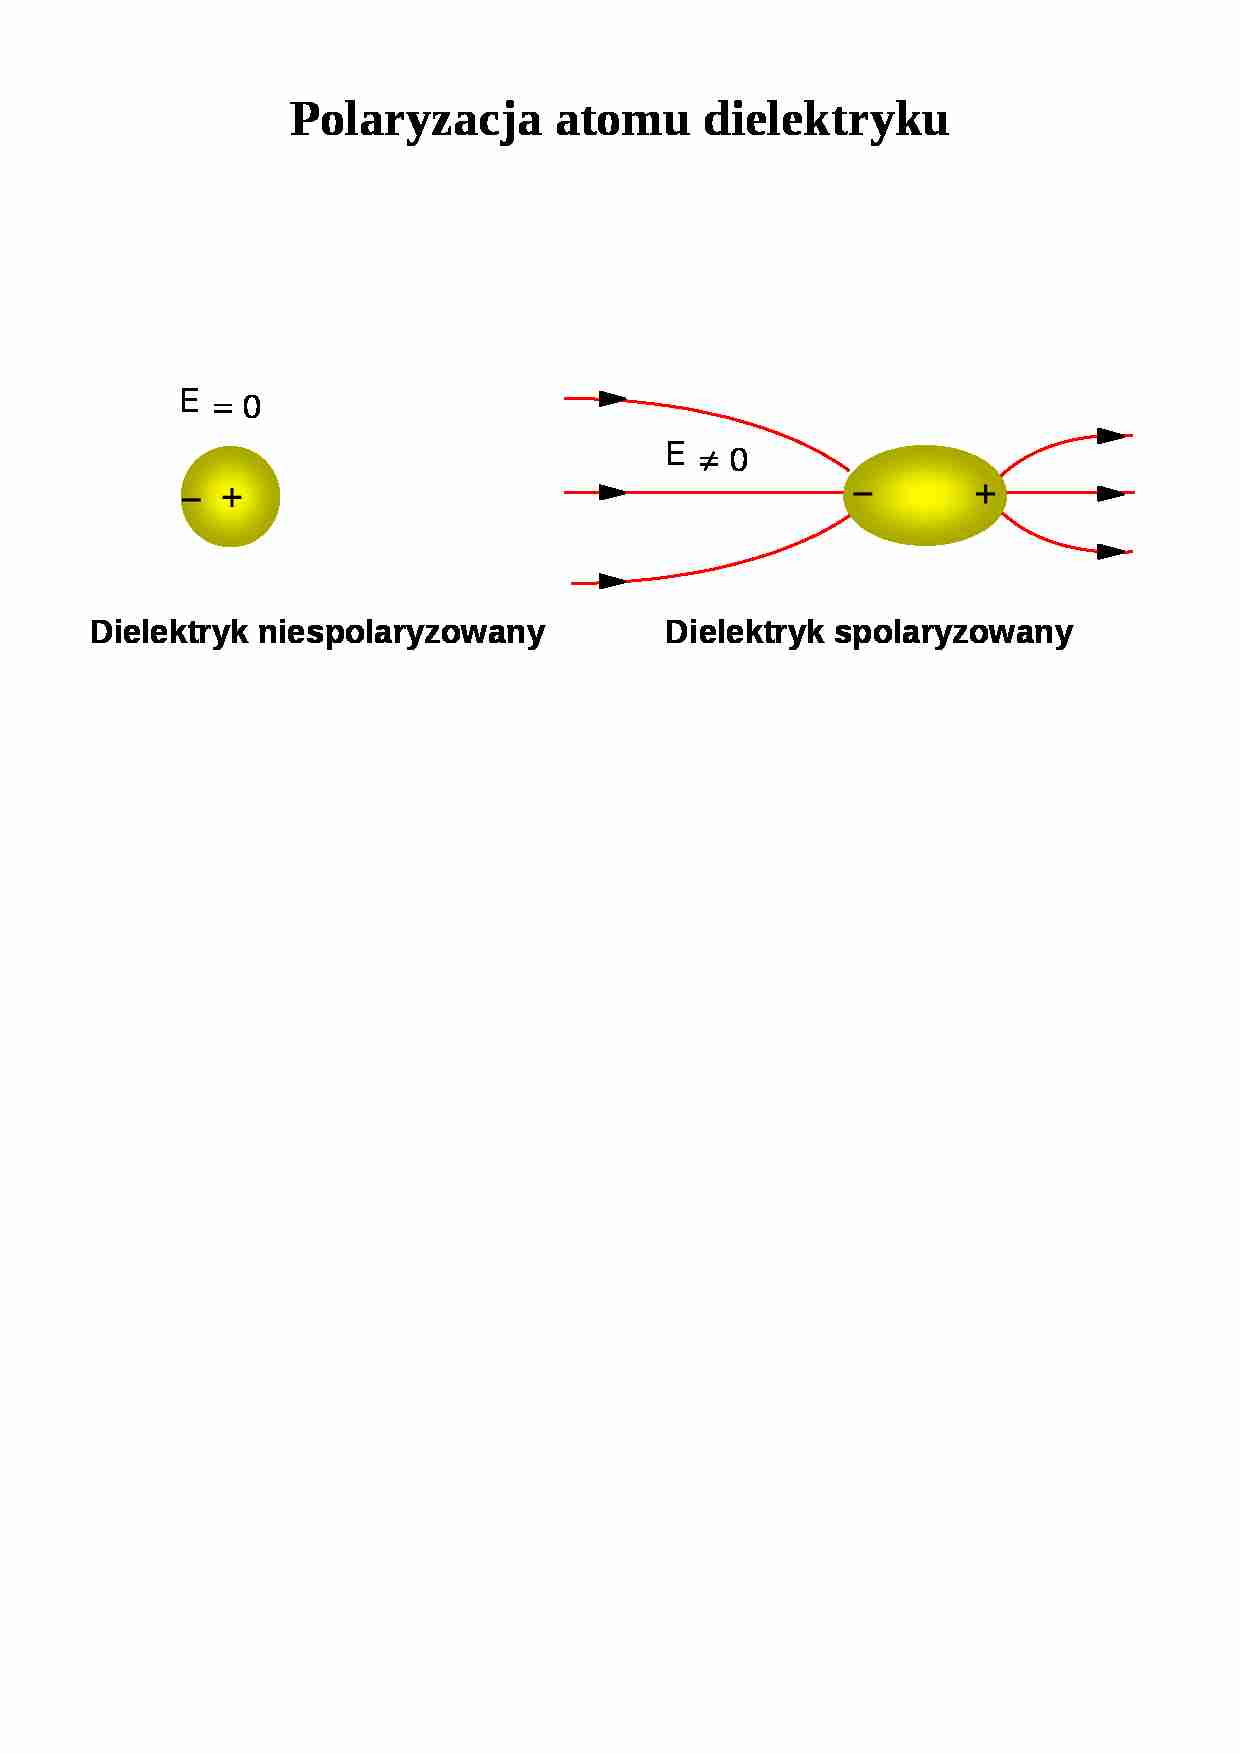 Polaryzacja atomu dielektryku - strona 1